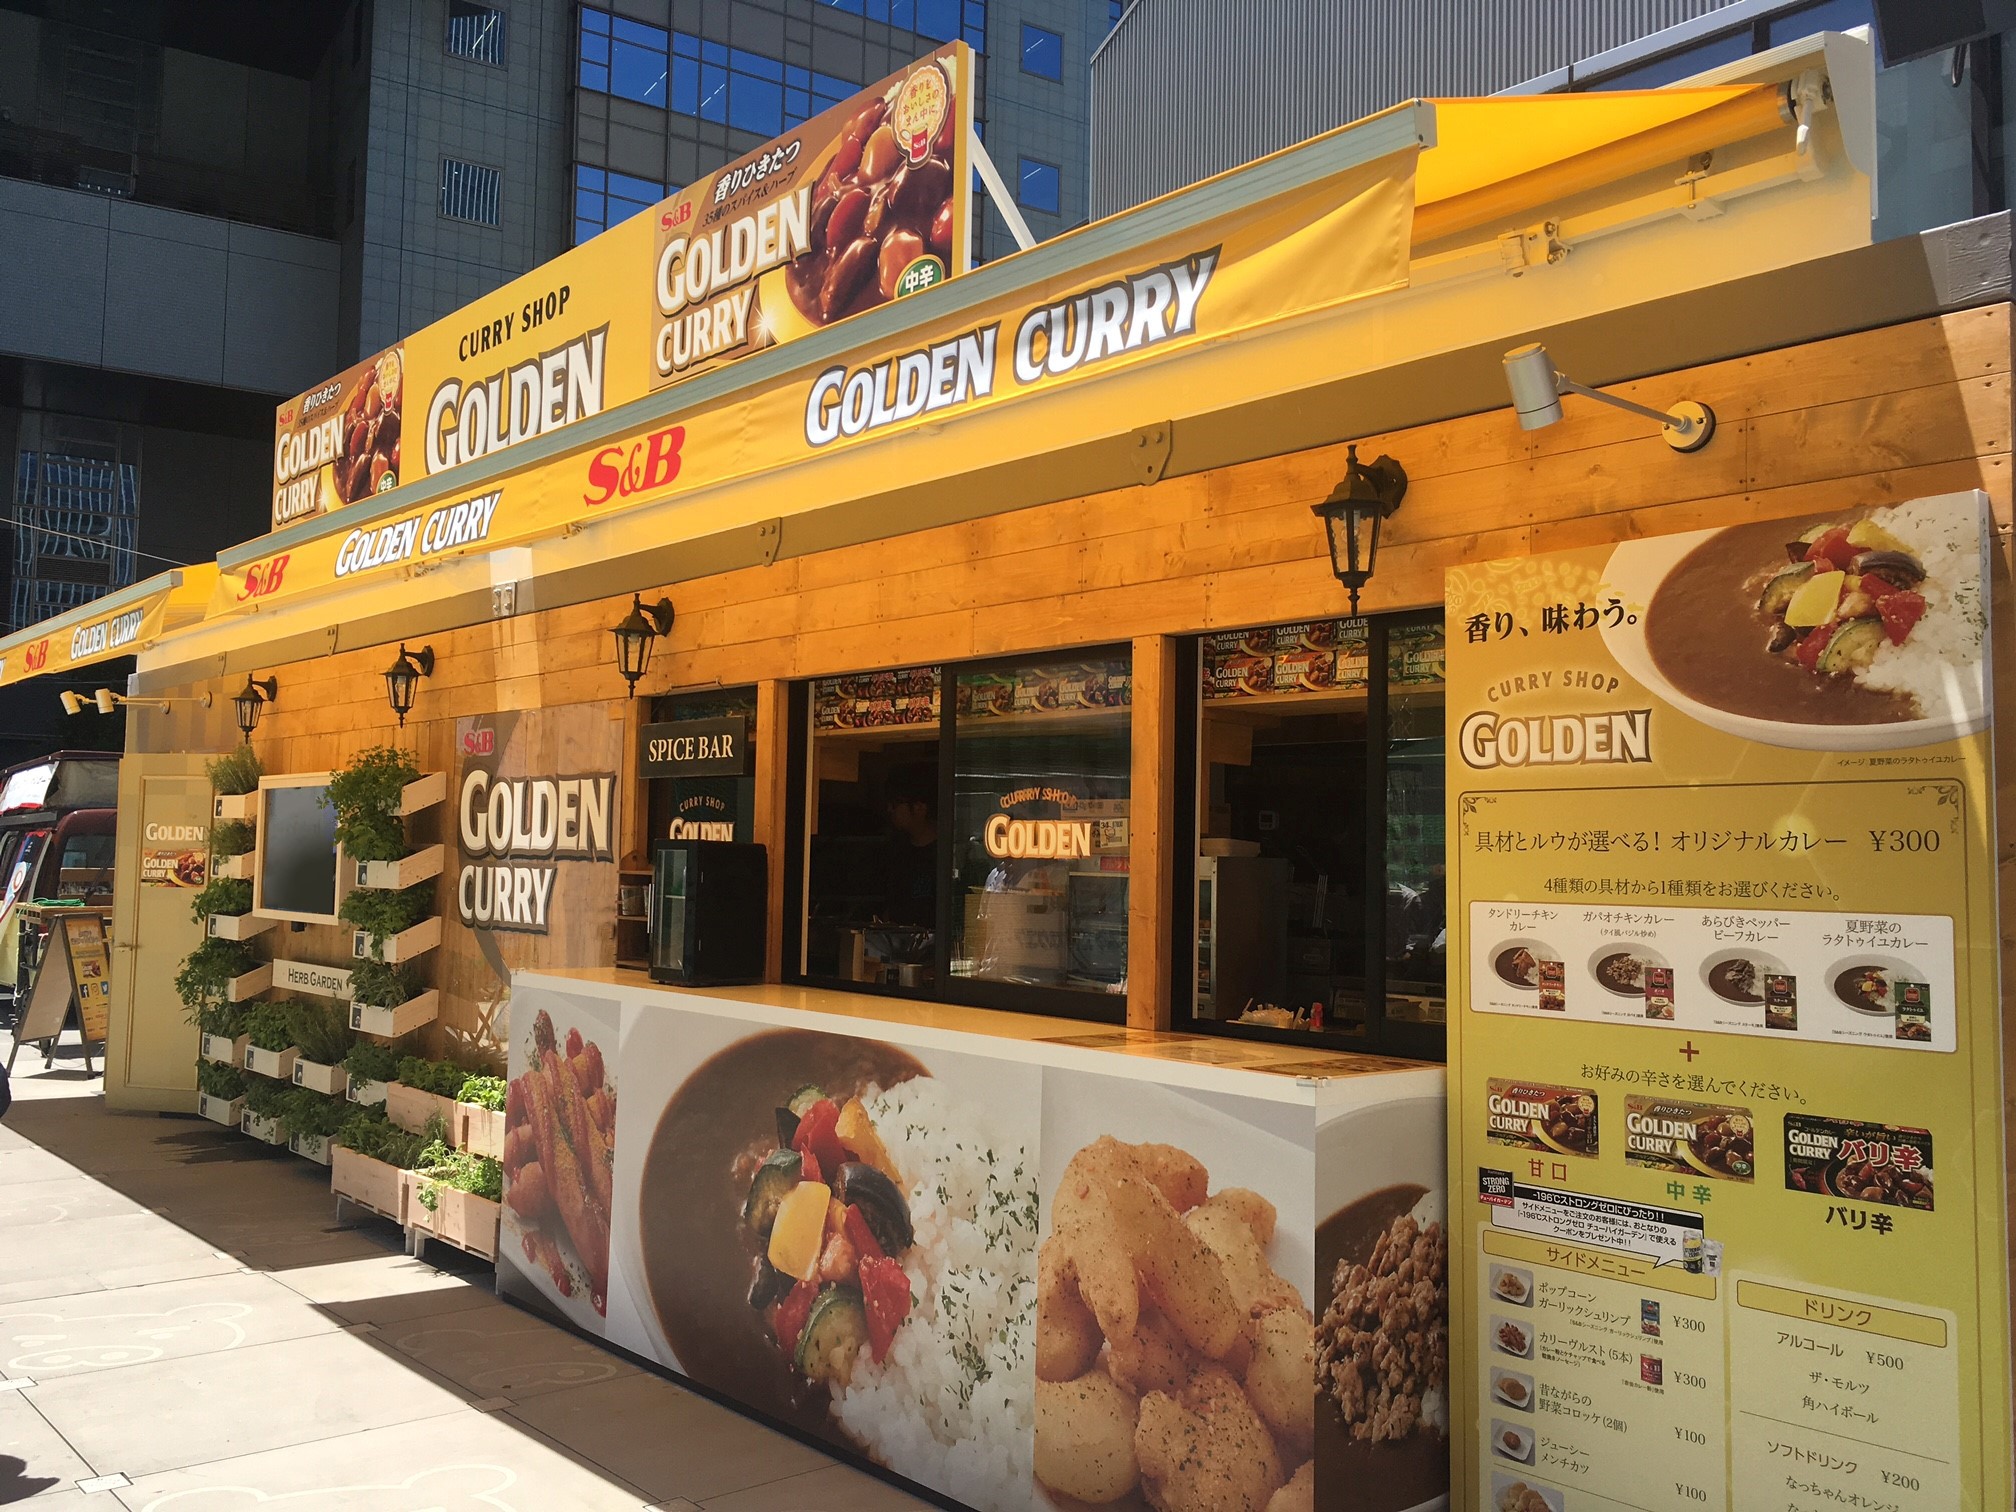 Tbs 夏サカス18 デジタル グルメパーク に Curry Shop Golden35 が7月14日にオープン エスビー食品株式会社のプレスリリース